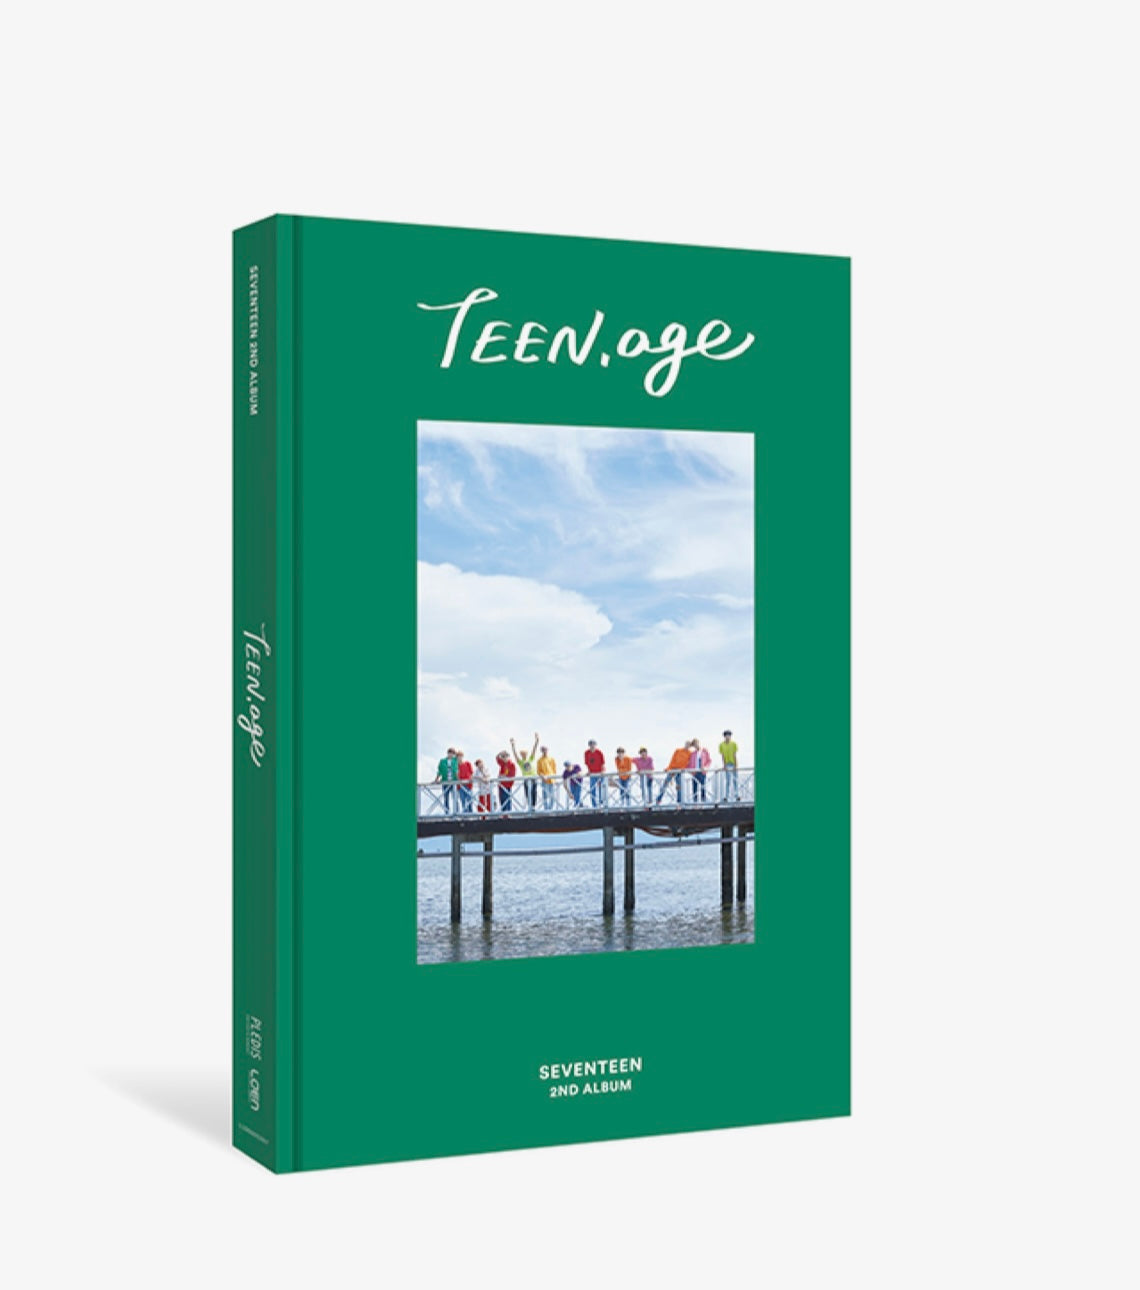 Seventeen Vol.2: Teen, Age [Reprint]